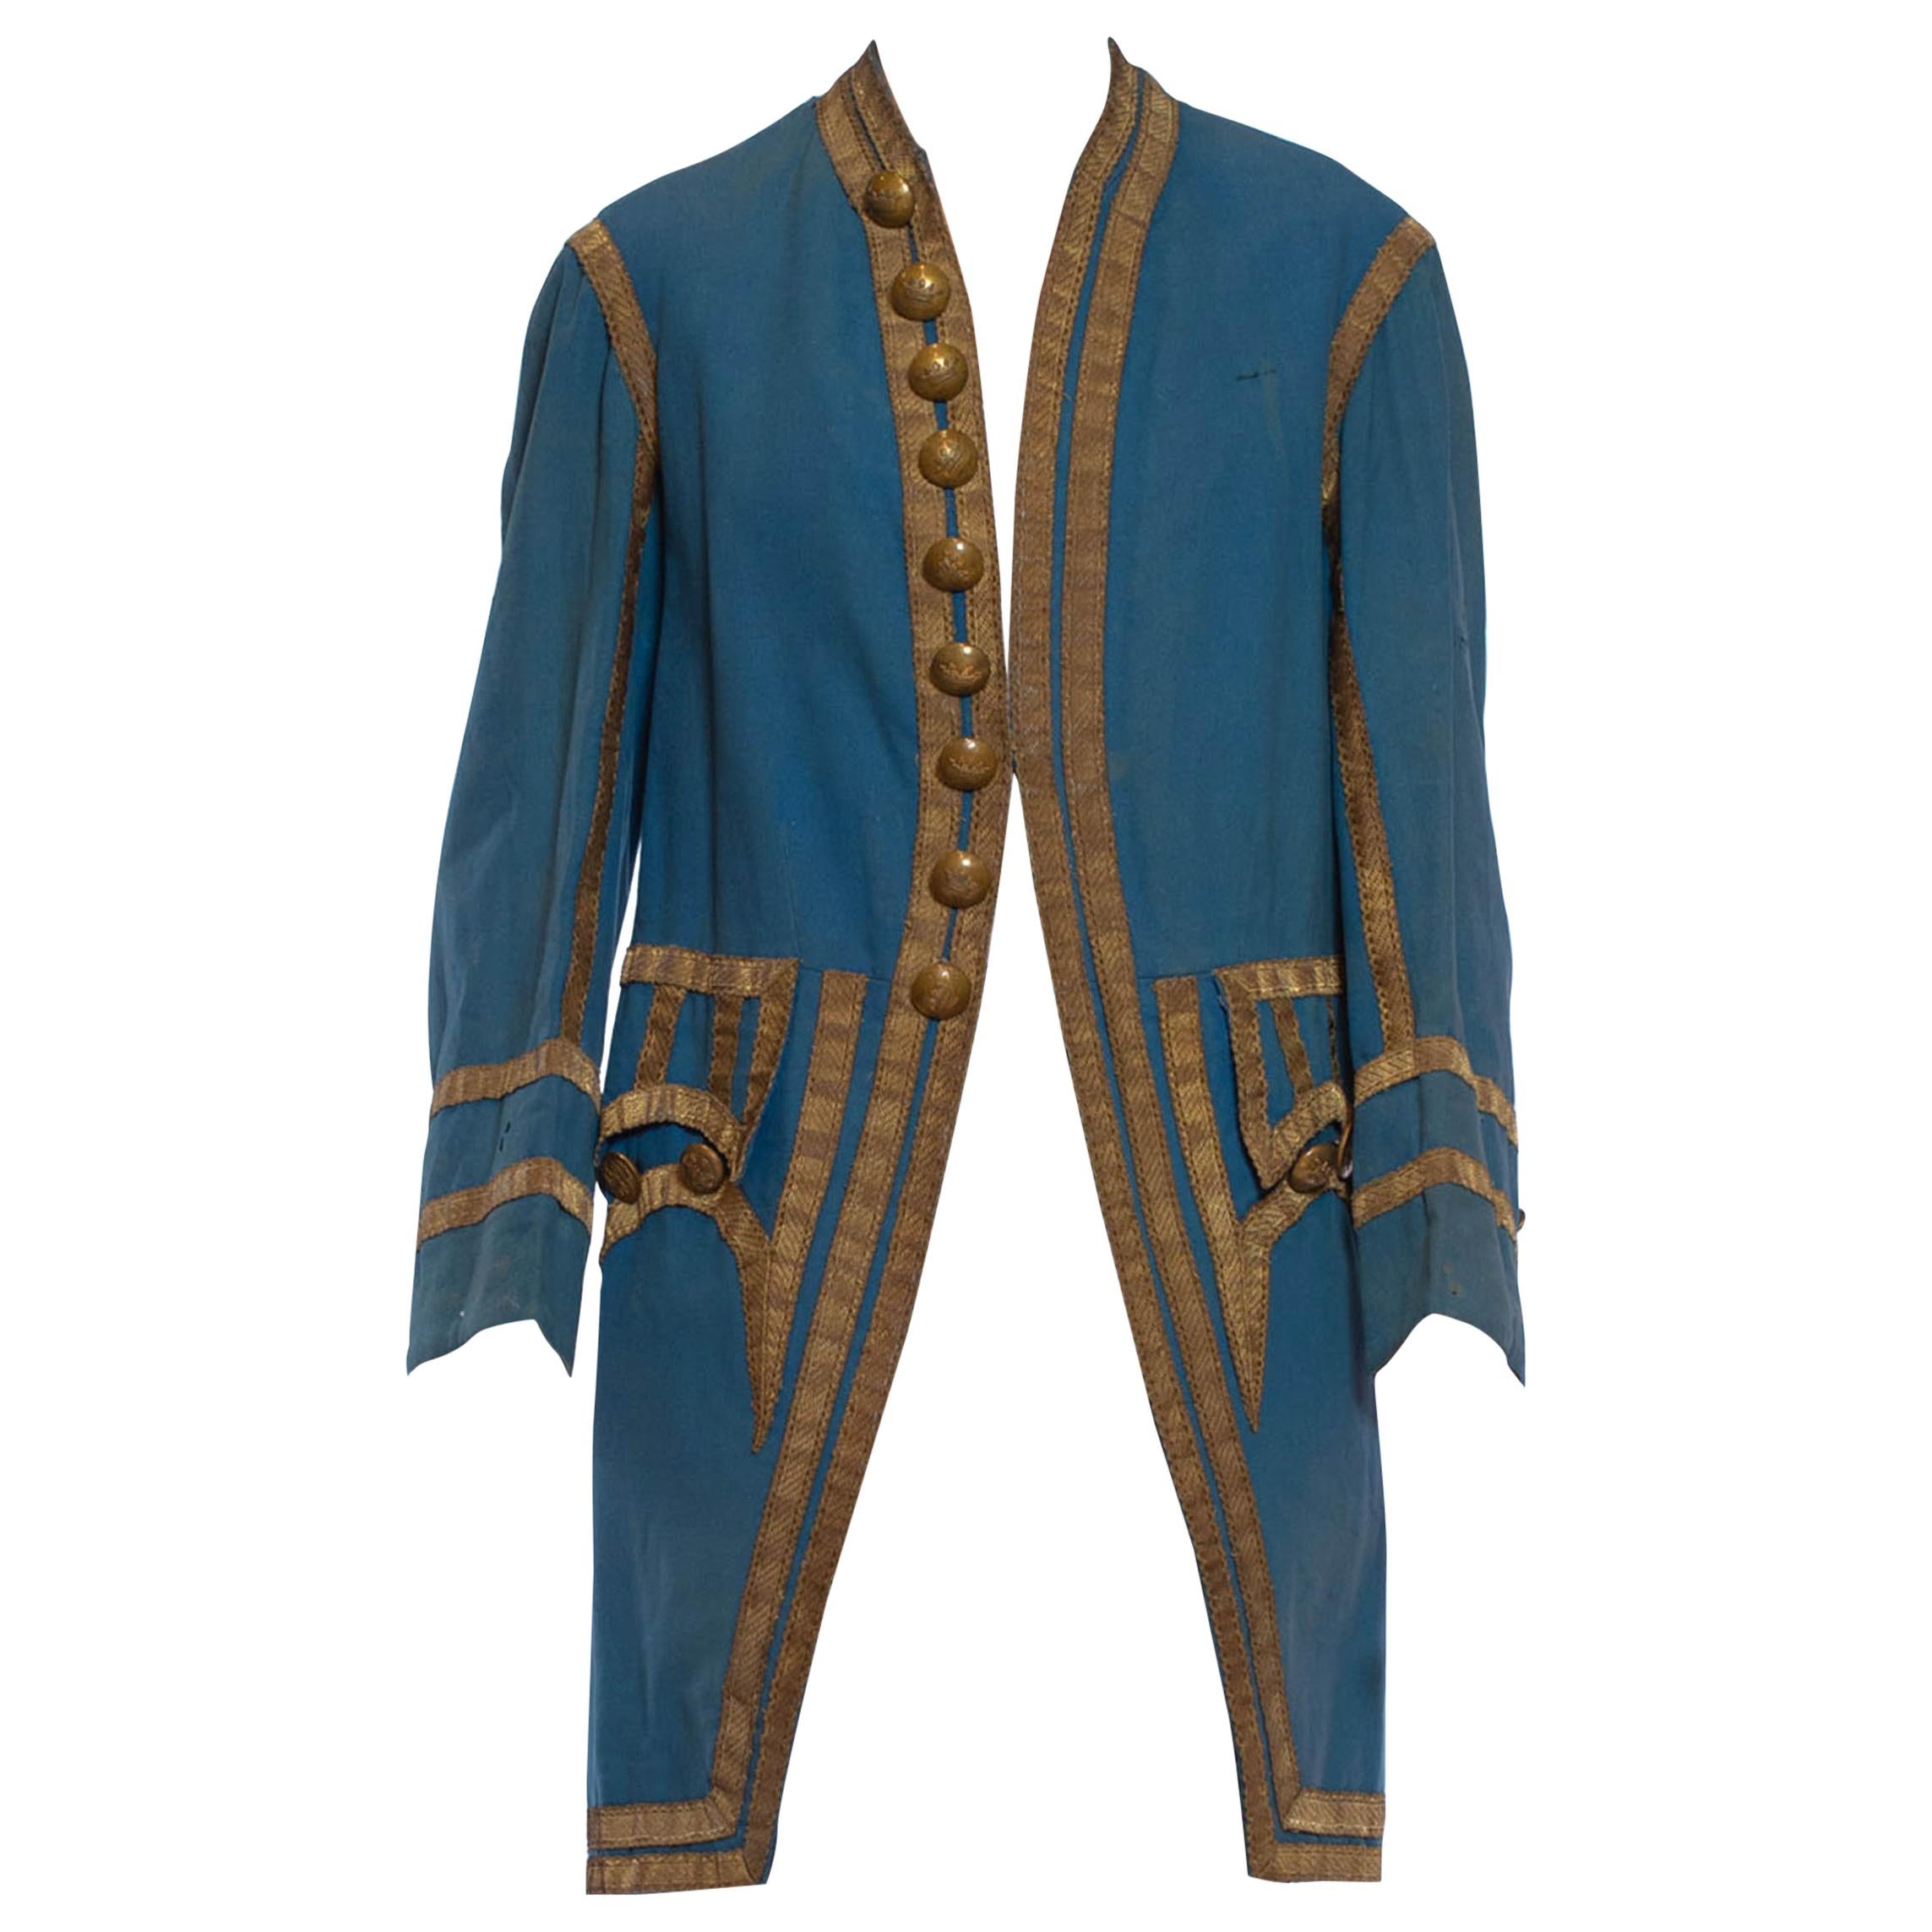 Kleding Herenkleding Pakken Men's Victorian Frock Coat 